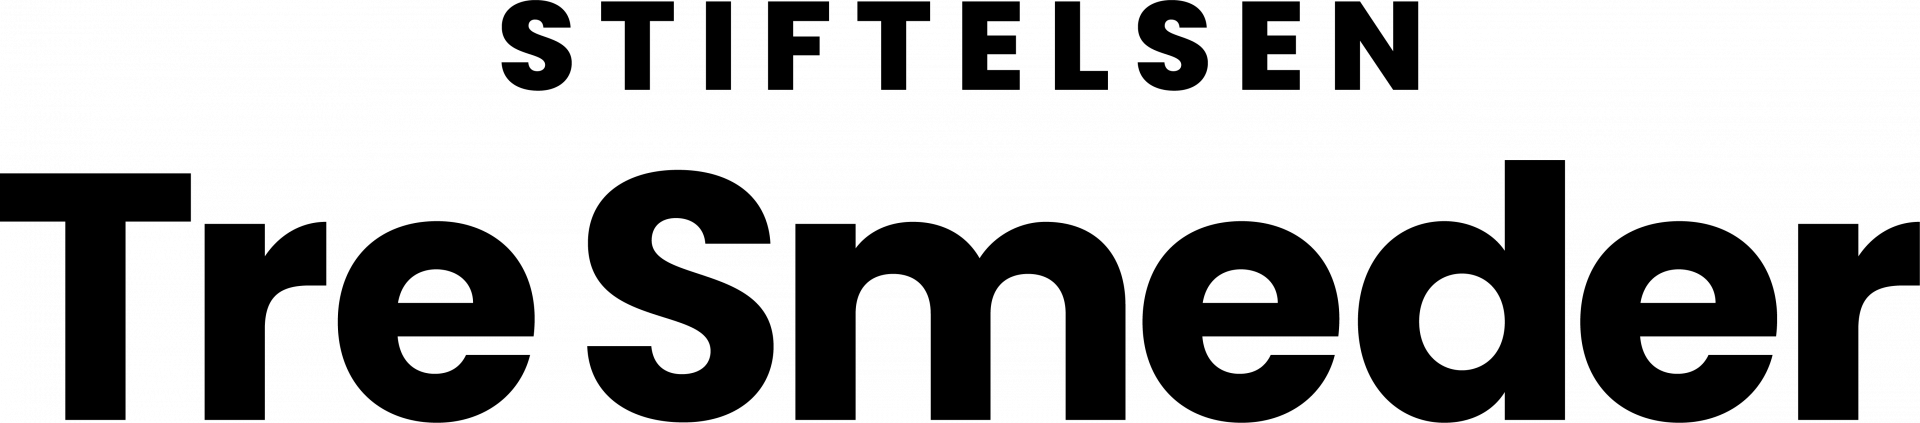 Stiftelsen Tre smeders-logo.